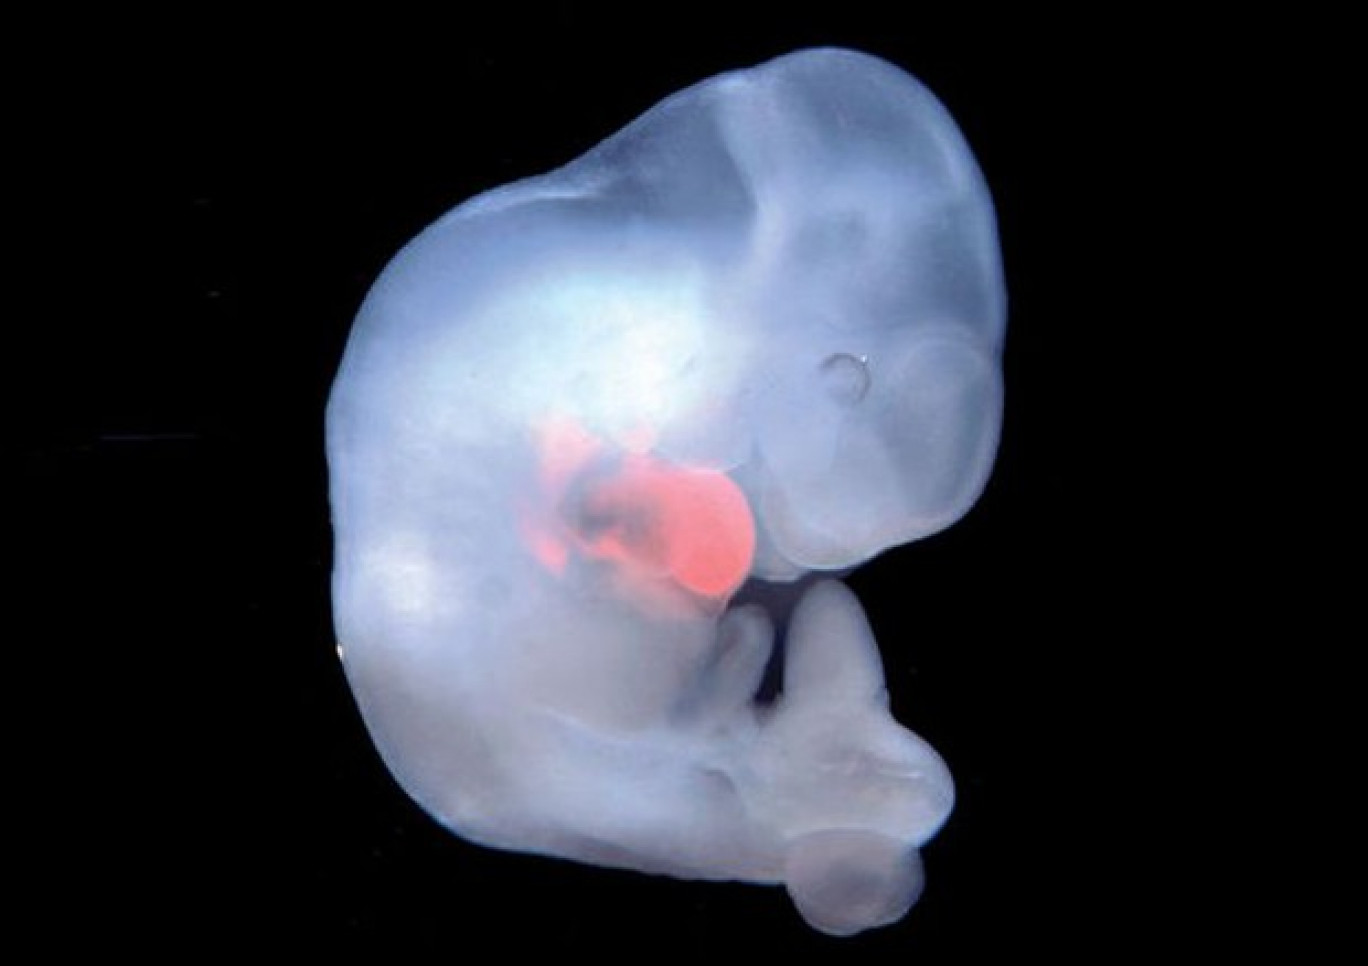 Embrioni ibridi uomo-scimmia in Cina, per ottenere organi